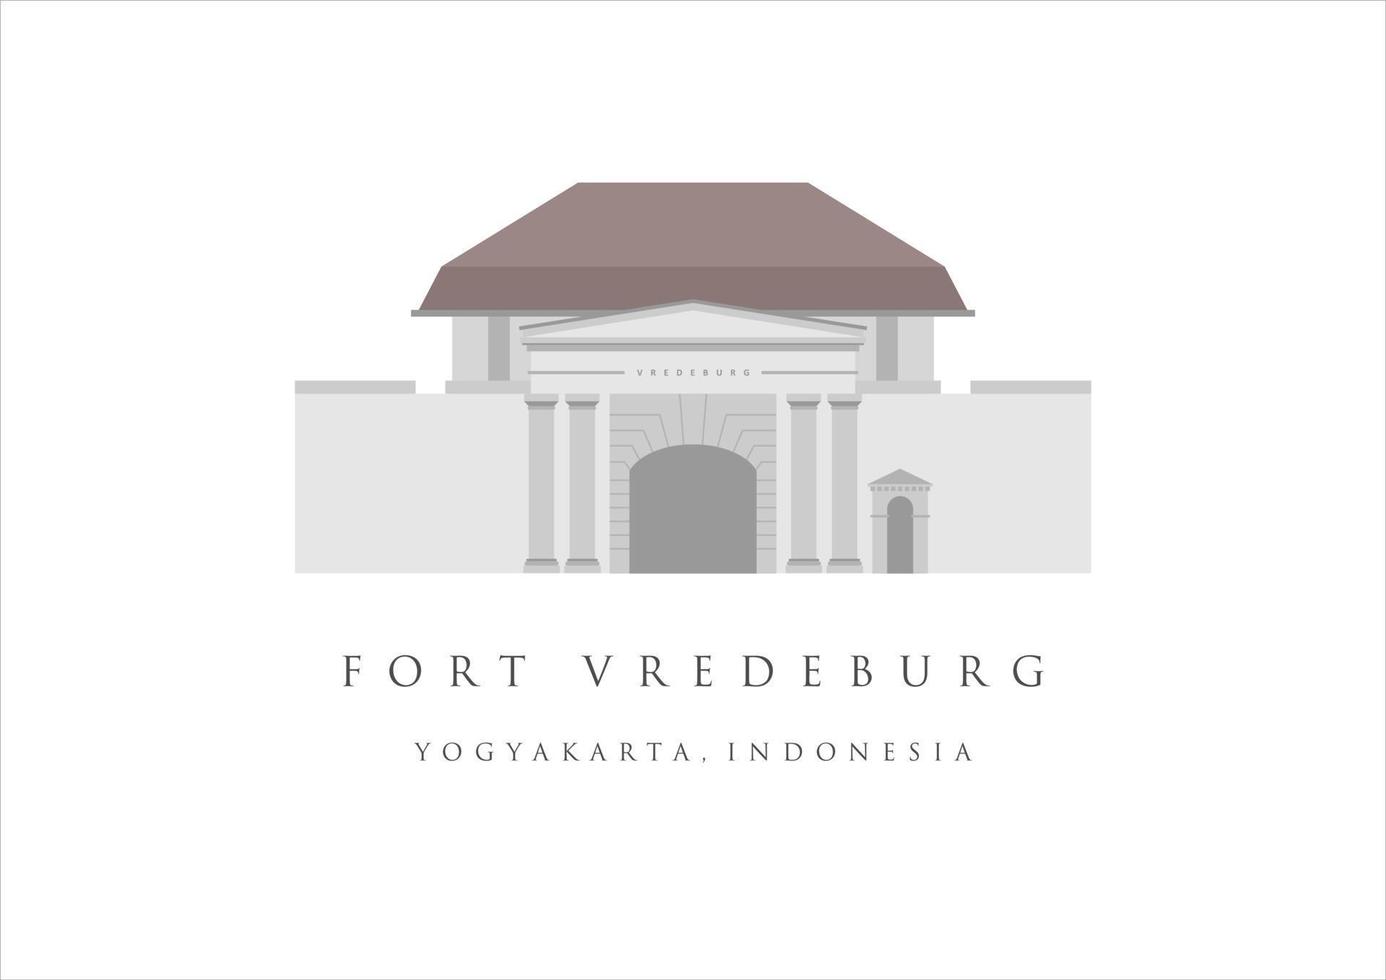 fuerte vredeburg o benteng vredeburg edificio emblemático de yogyakarta. turismo patrimonial de indonesia. Ilustración de vector de edificio antiguo jogjakarta